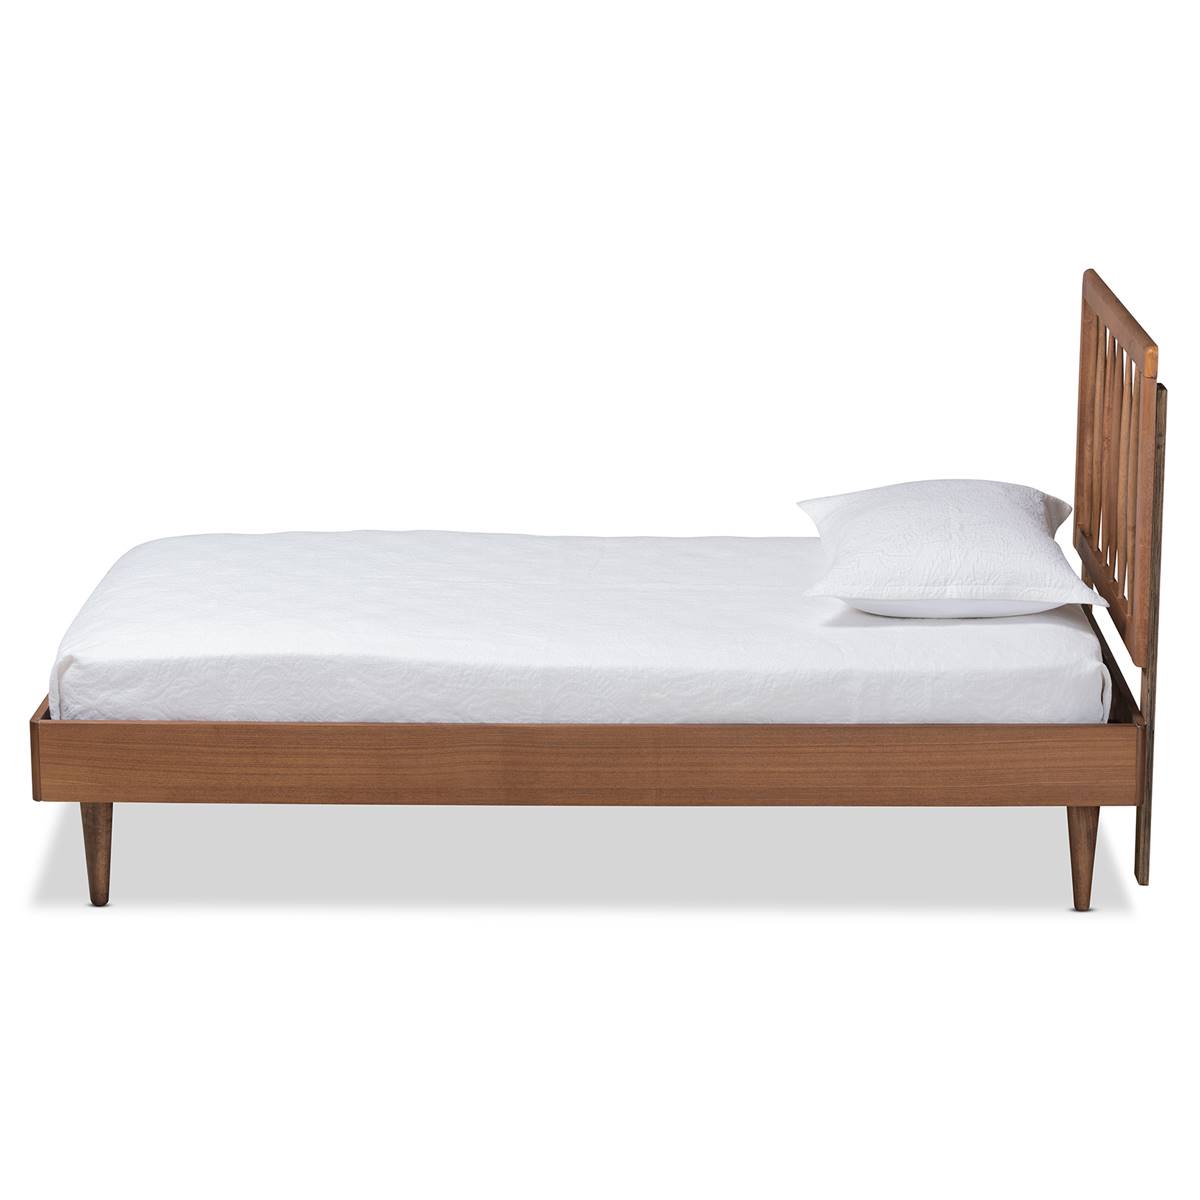 Baxton Studio Sora Ash Walnut Wood Twin Size Platform Bed